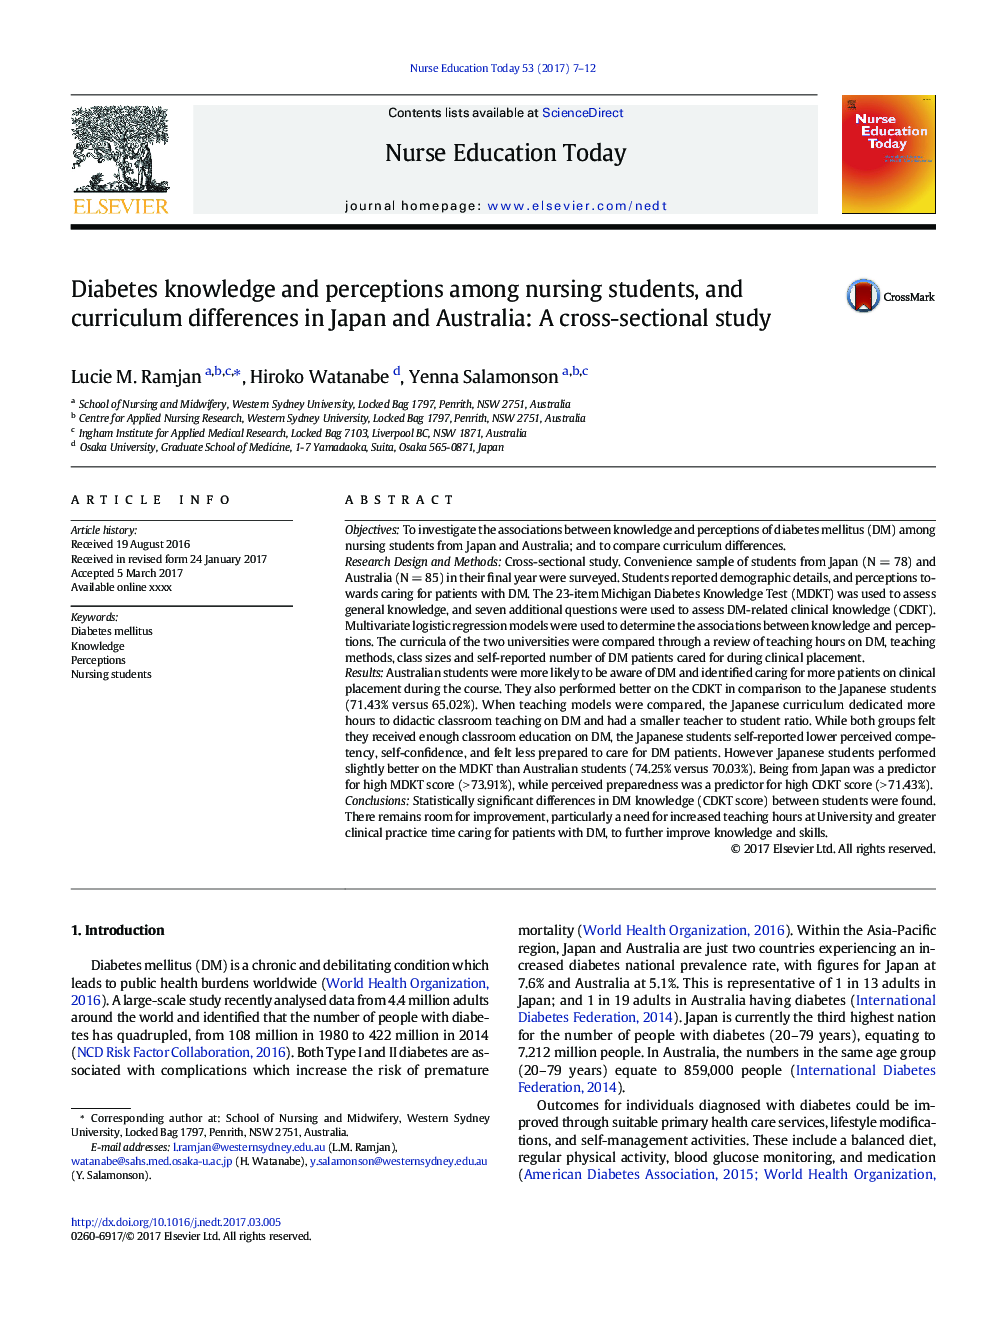 آگاهی و درک دیابت در میان دانشجویان پرستاری و تفاوت های درسی در ژاپن و استرالیا: یک مطالعه مقطعی 